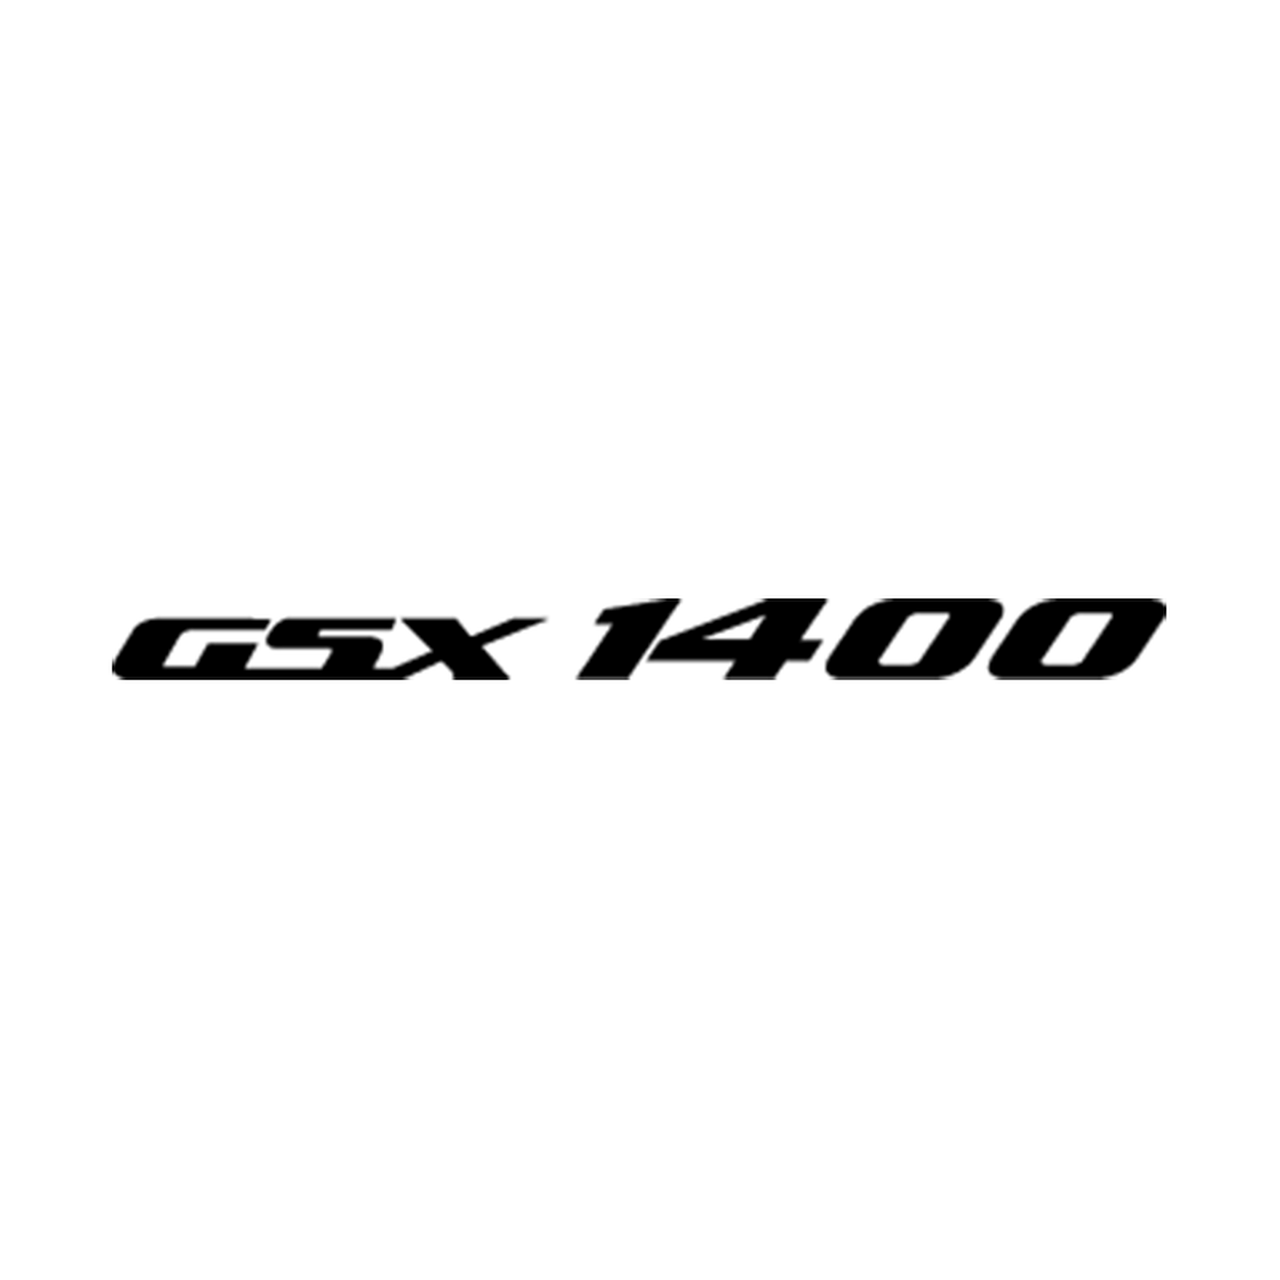 GSX Logo - Suzuki Gsx 1400 Logo Vinyl Decal